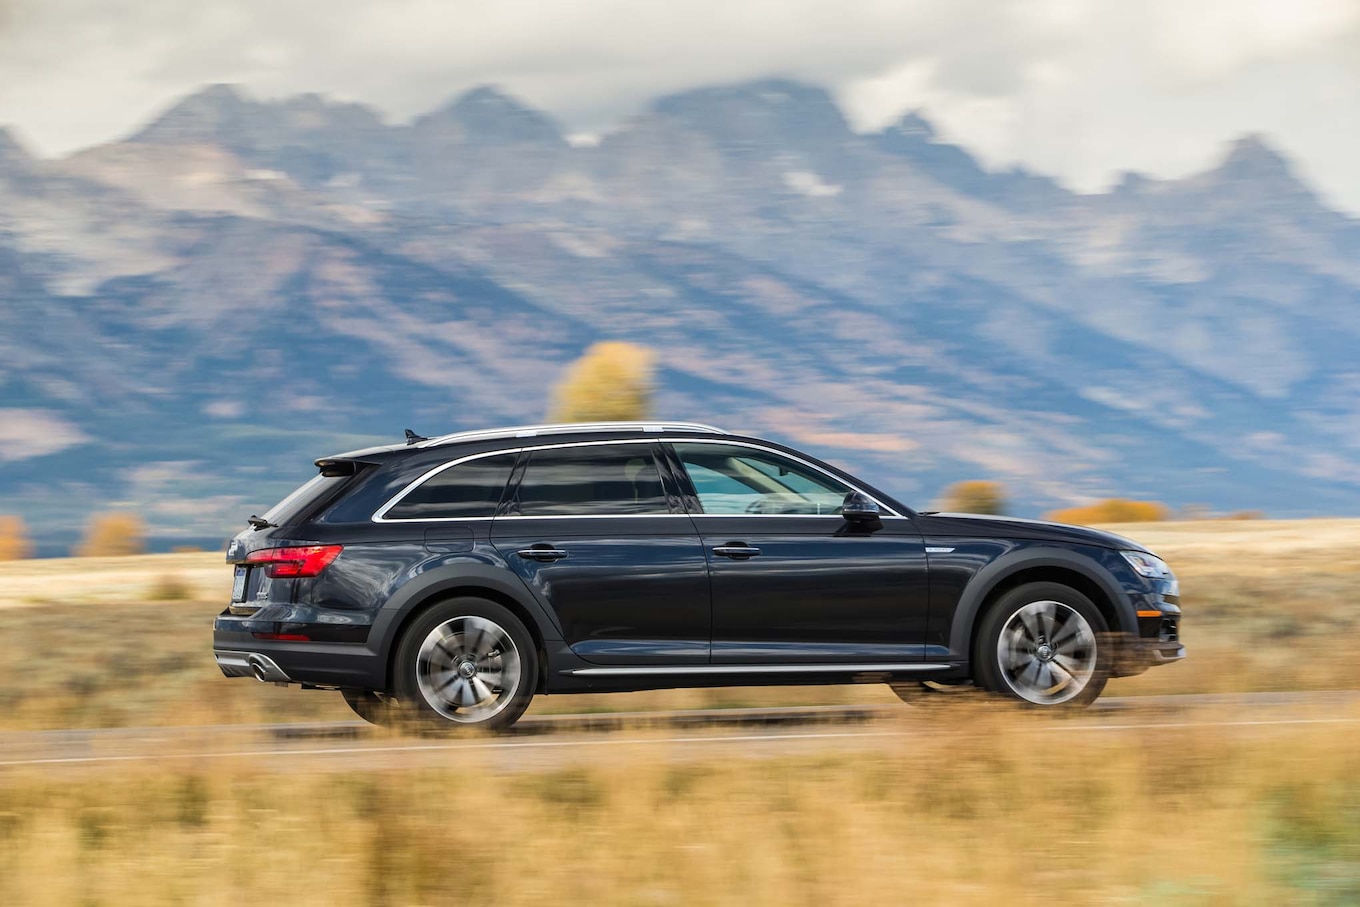 2017-Audi-A4-Allroad-rear-side-in-motion.jpg